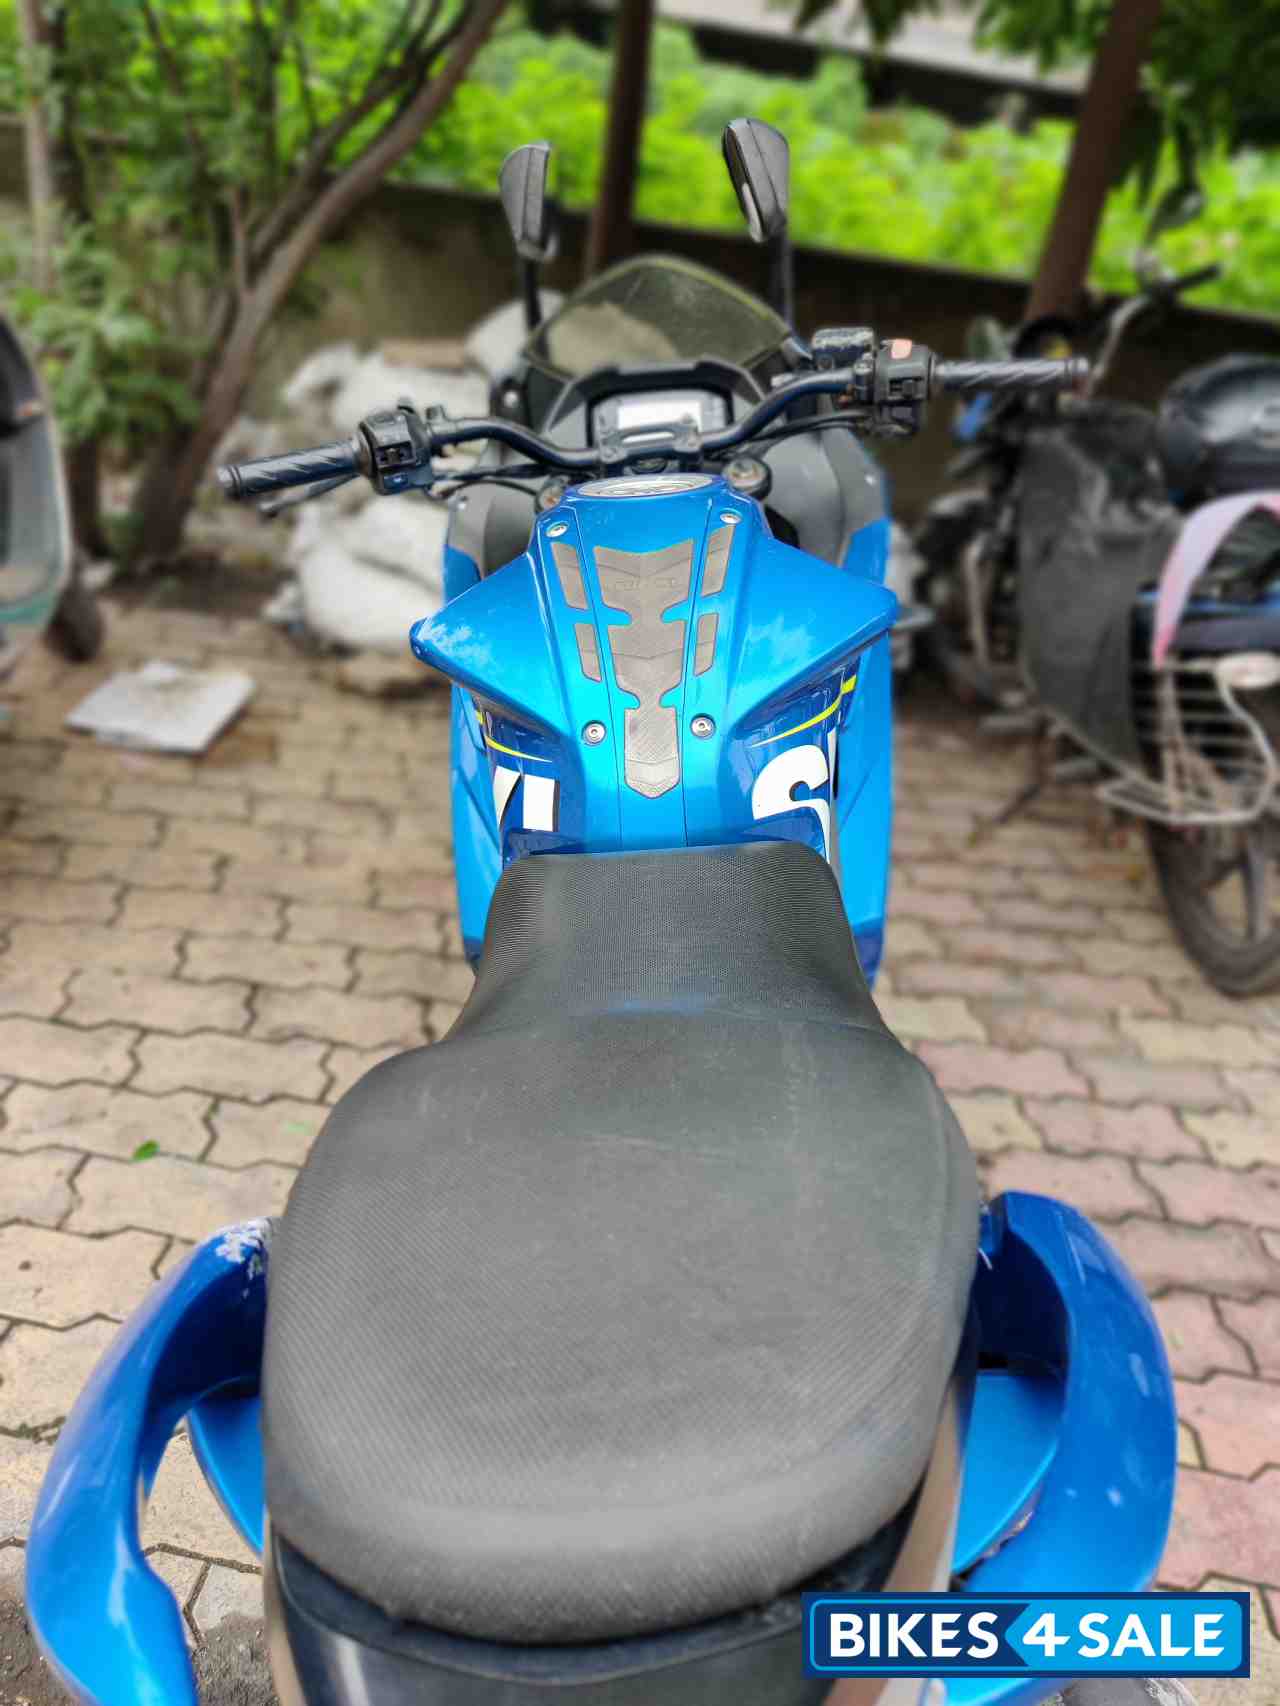 Suzuki Gixxer SF Moto GP